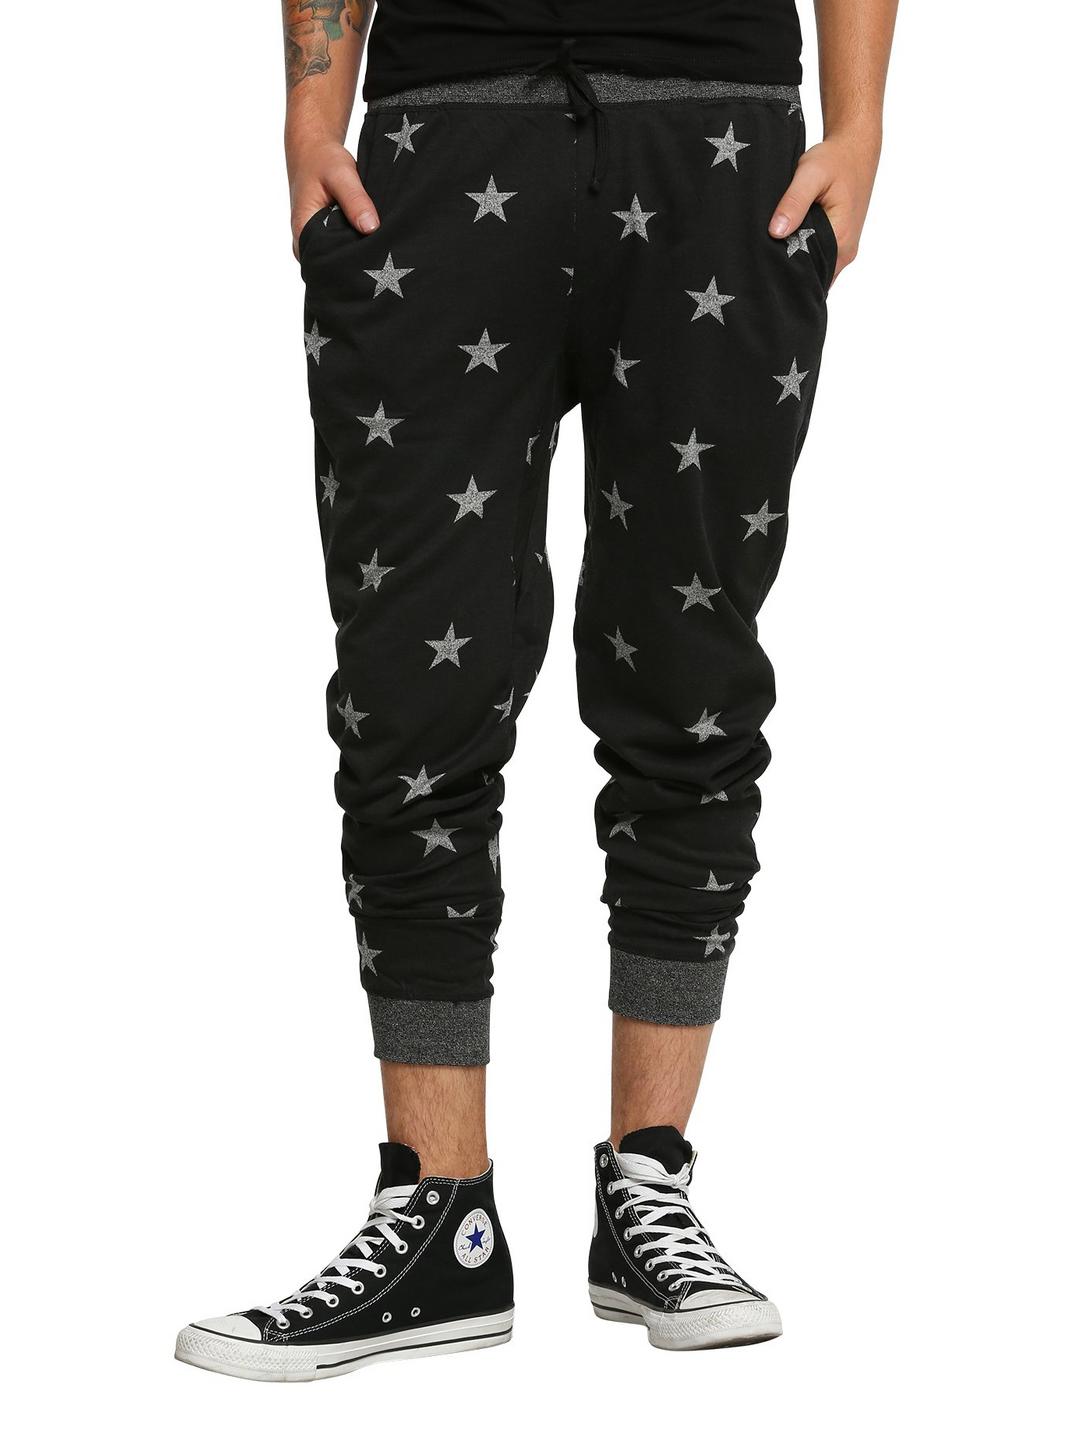 Brooklyn Cloth Star Print Knit Jogger Pants, BLACK, hi-res